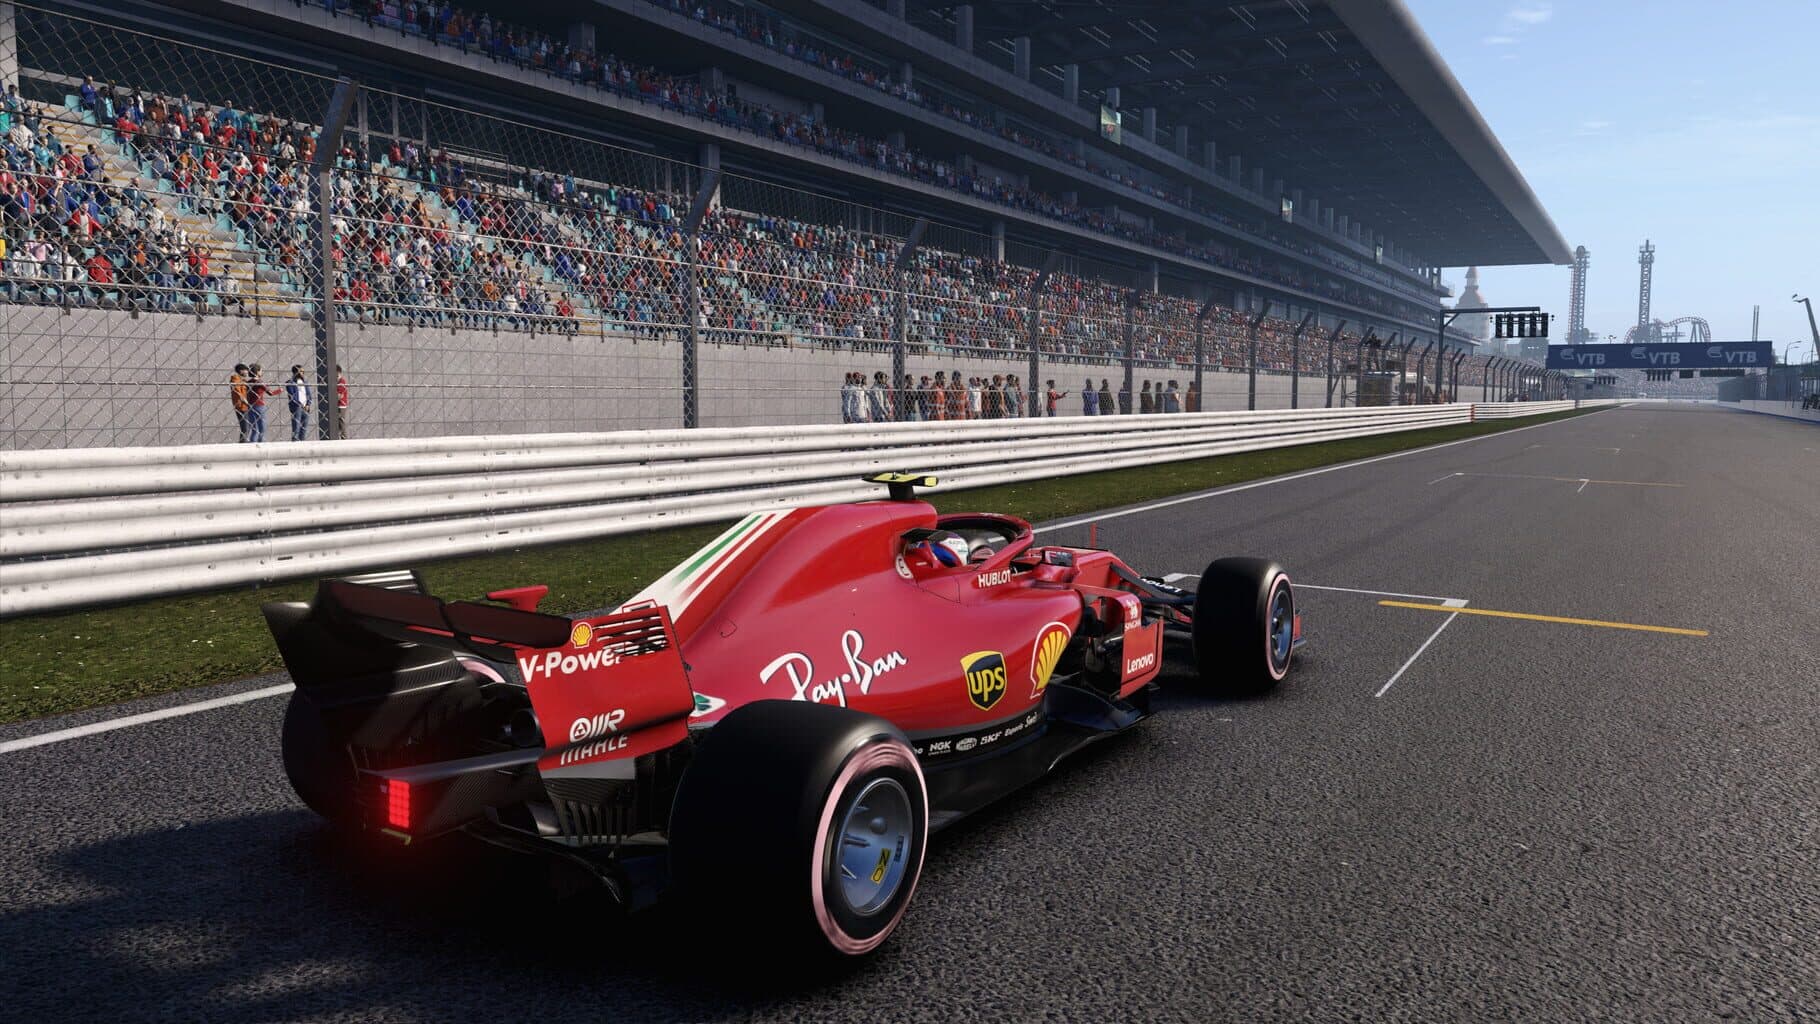 F1 2018 Image